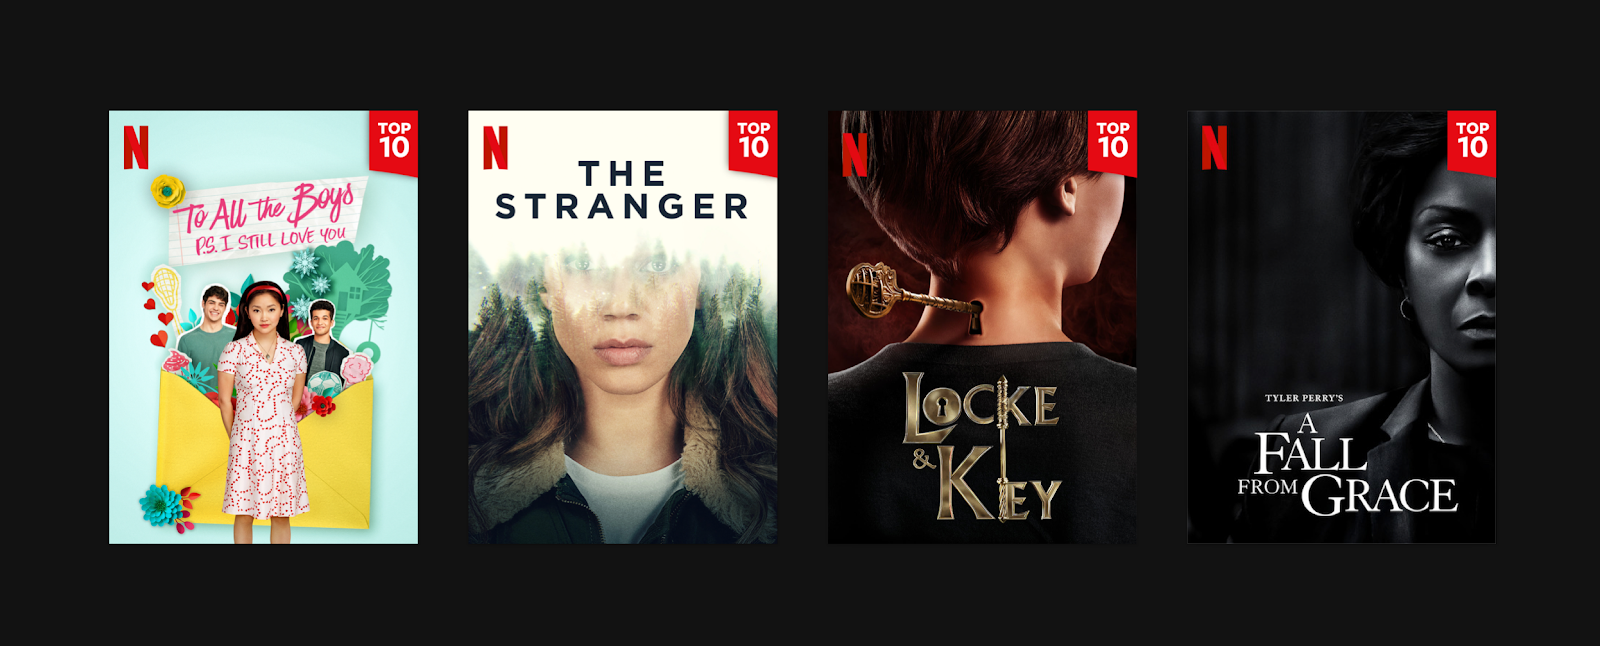 Daily Top 10 : une nouvelle fonctionnalité Netflix pour découvrir les contenus les plus vus dans votre pays